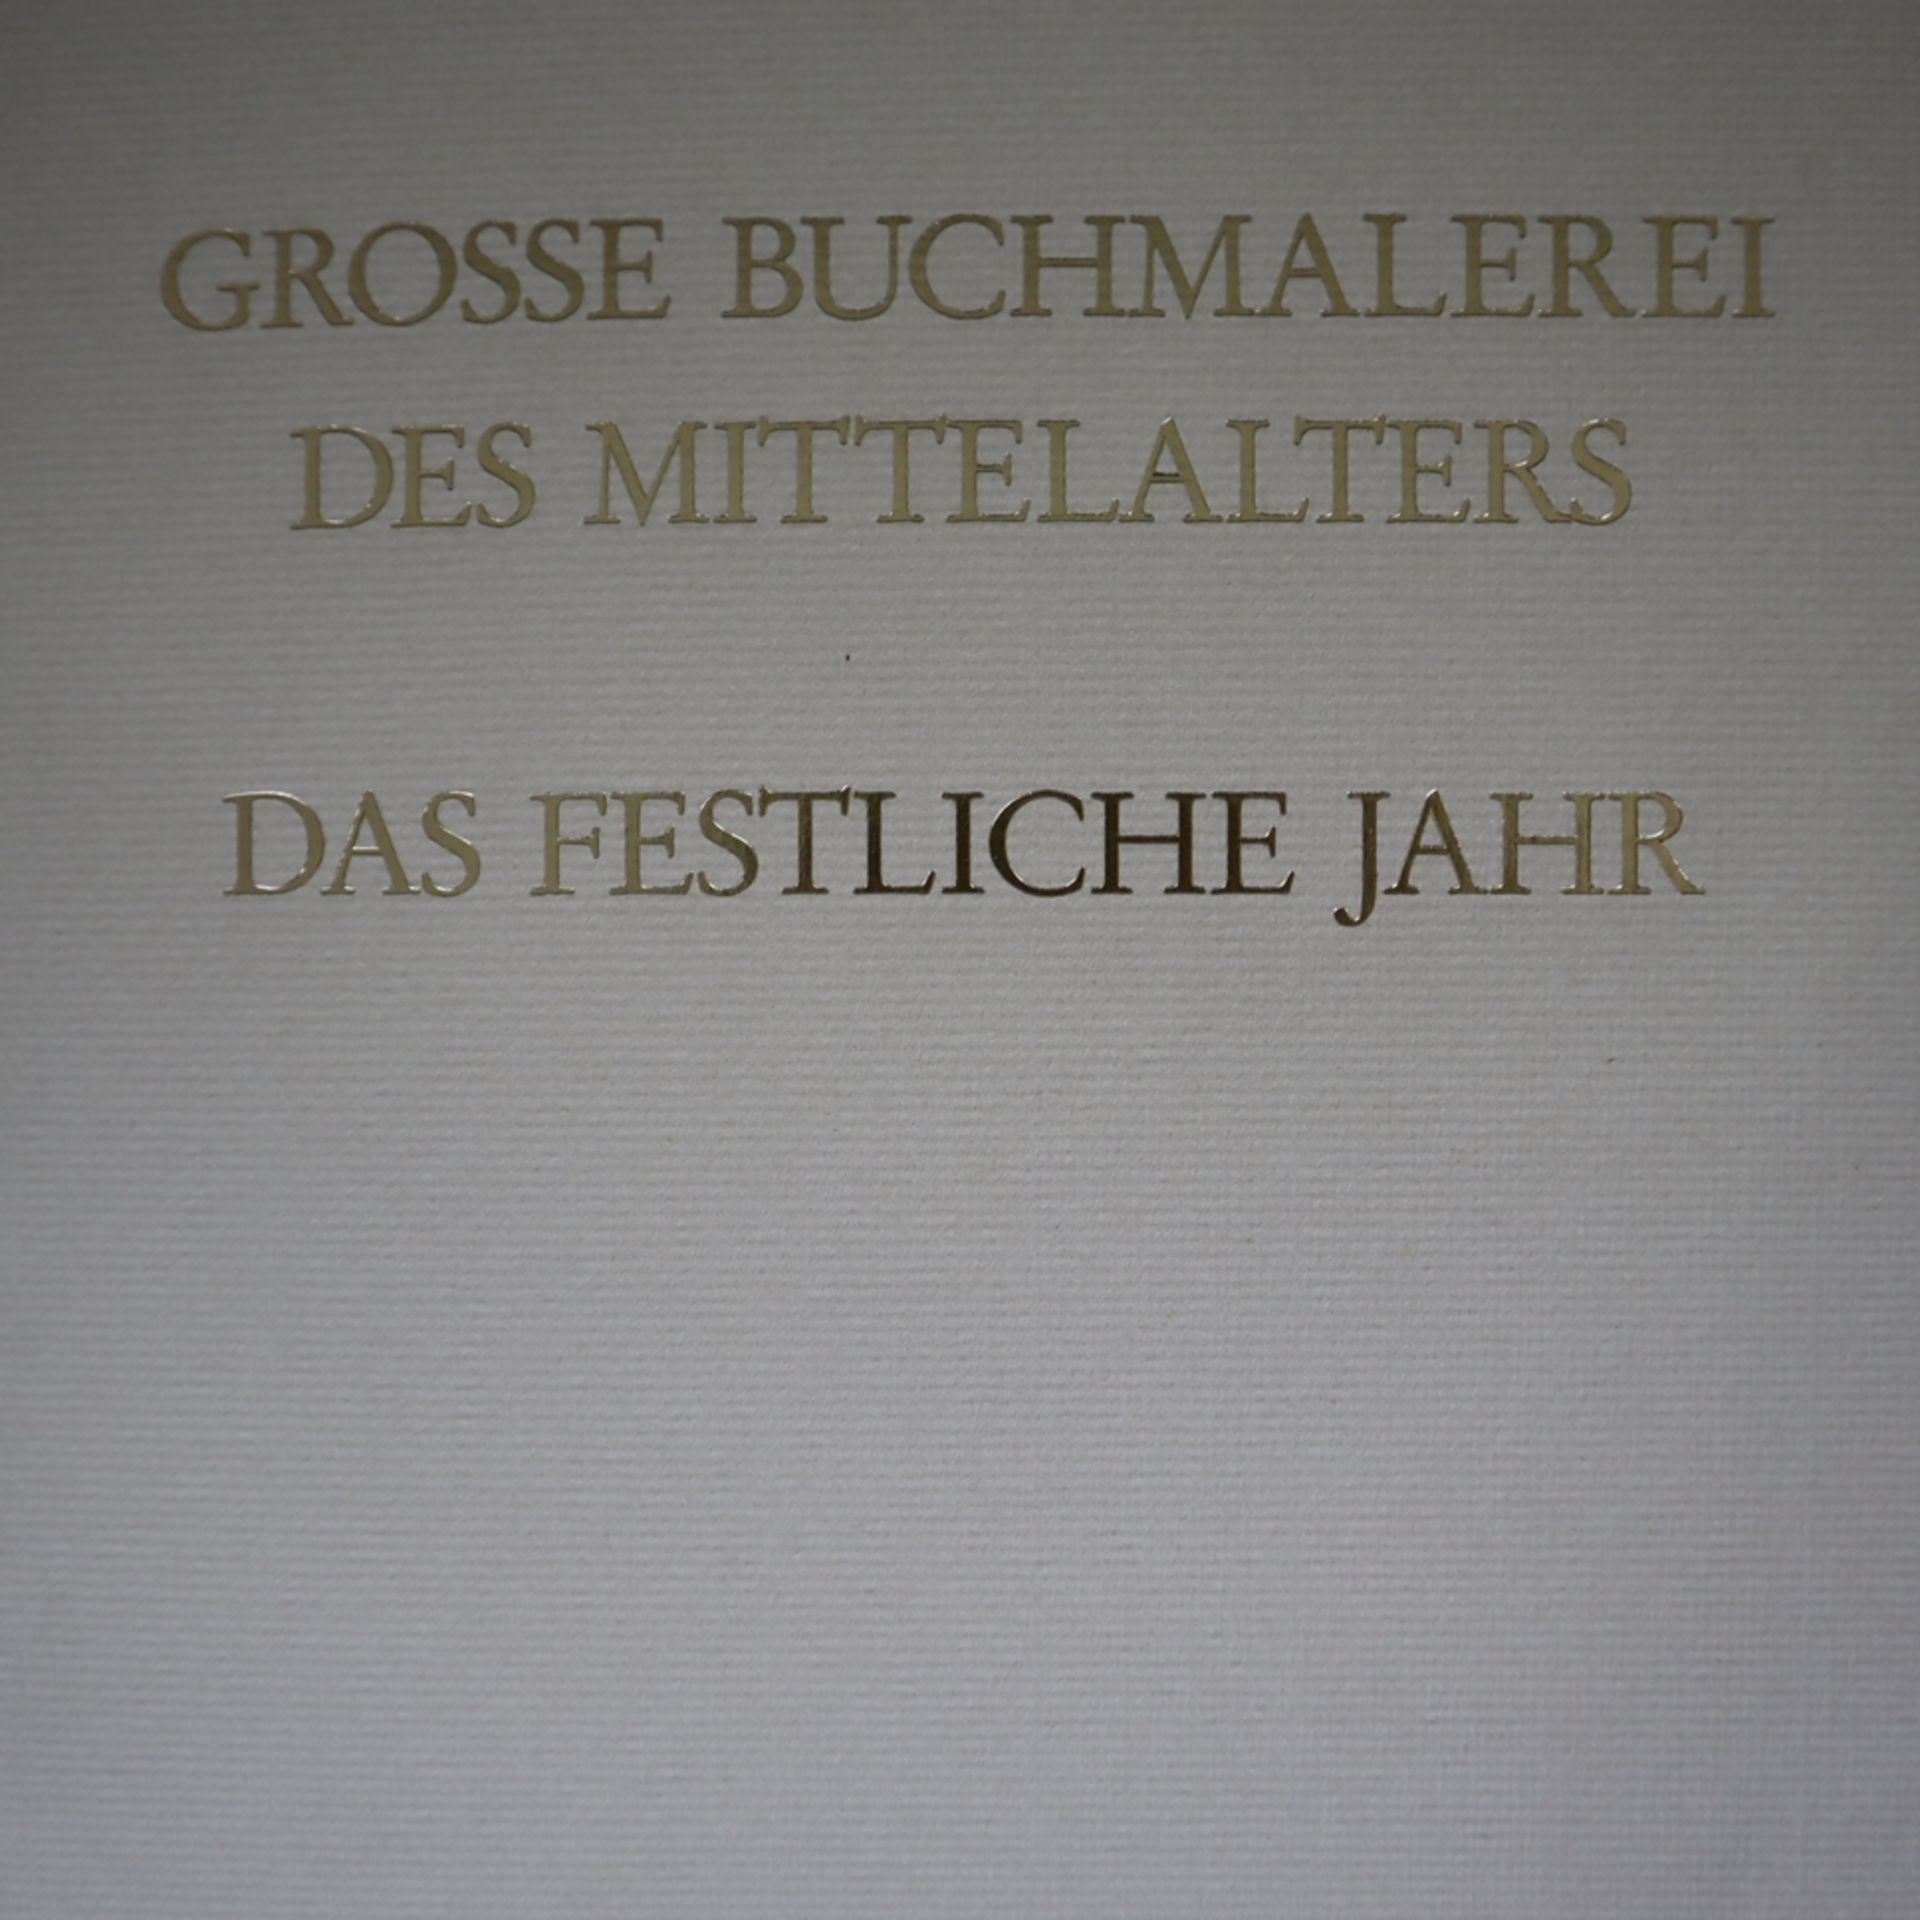 Große Buchmalerei des Mittelalters - Das festliche Jahr, Faksimile-Ausgabe, Exklusivausgabe für Cor - Bild 3 aus 8